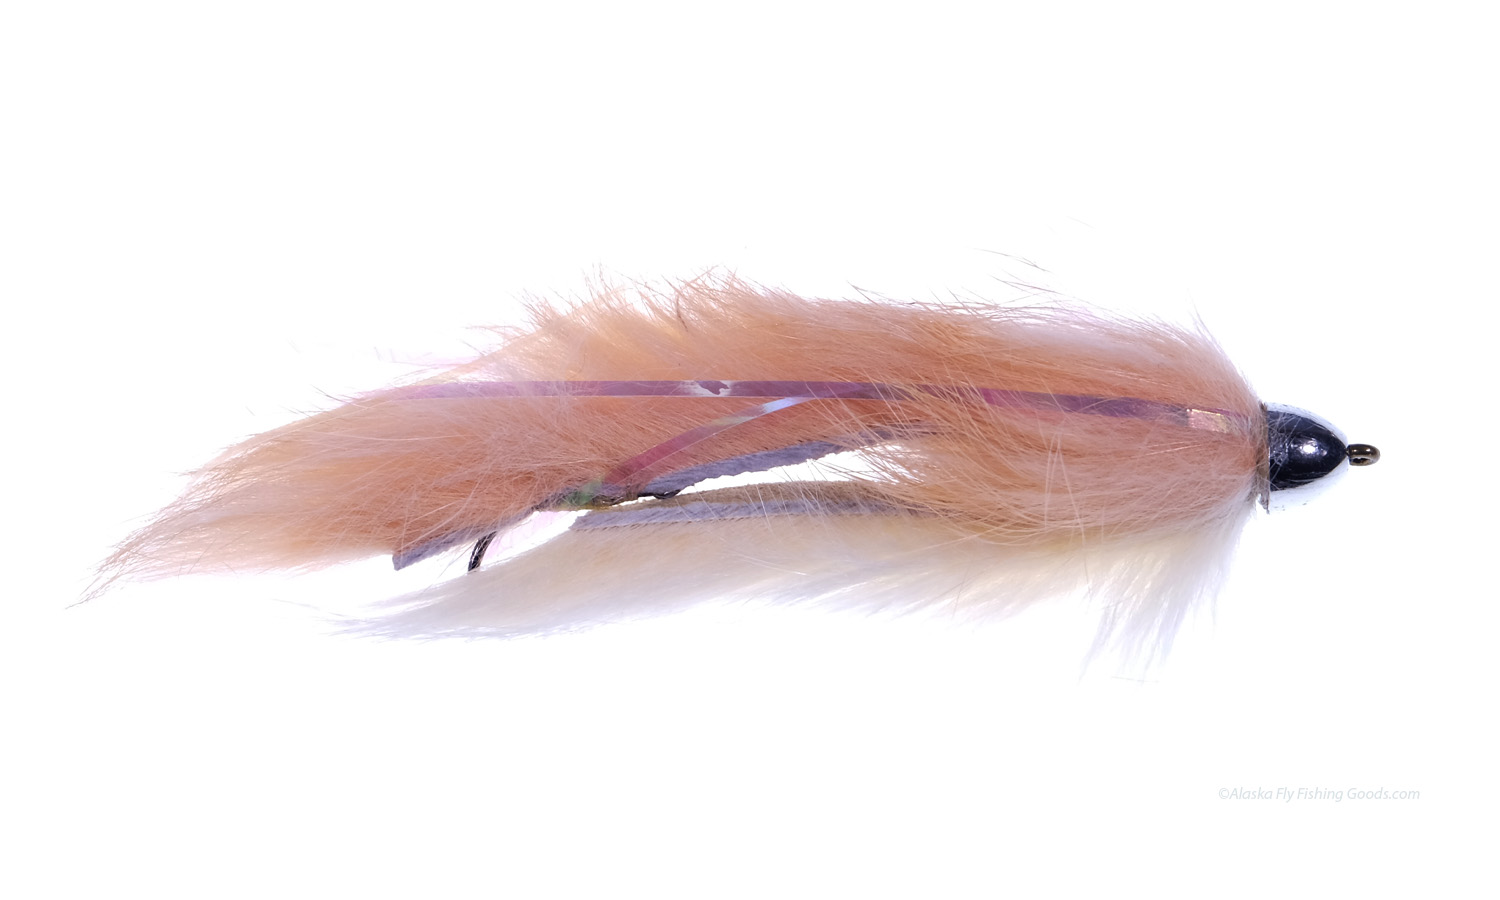 Dolly Llama Flies - Flies - Alaska Fly Fishing Goods